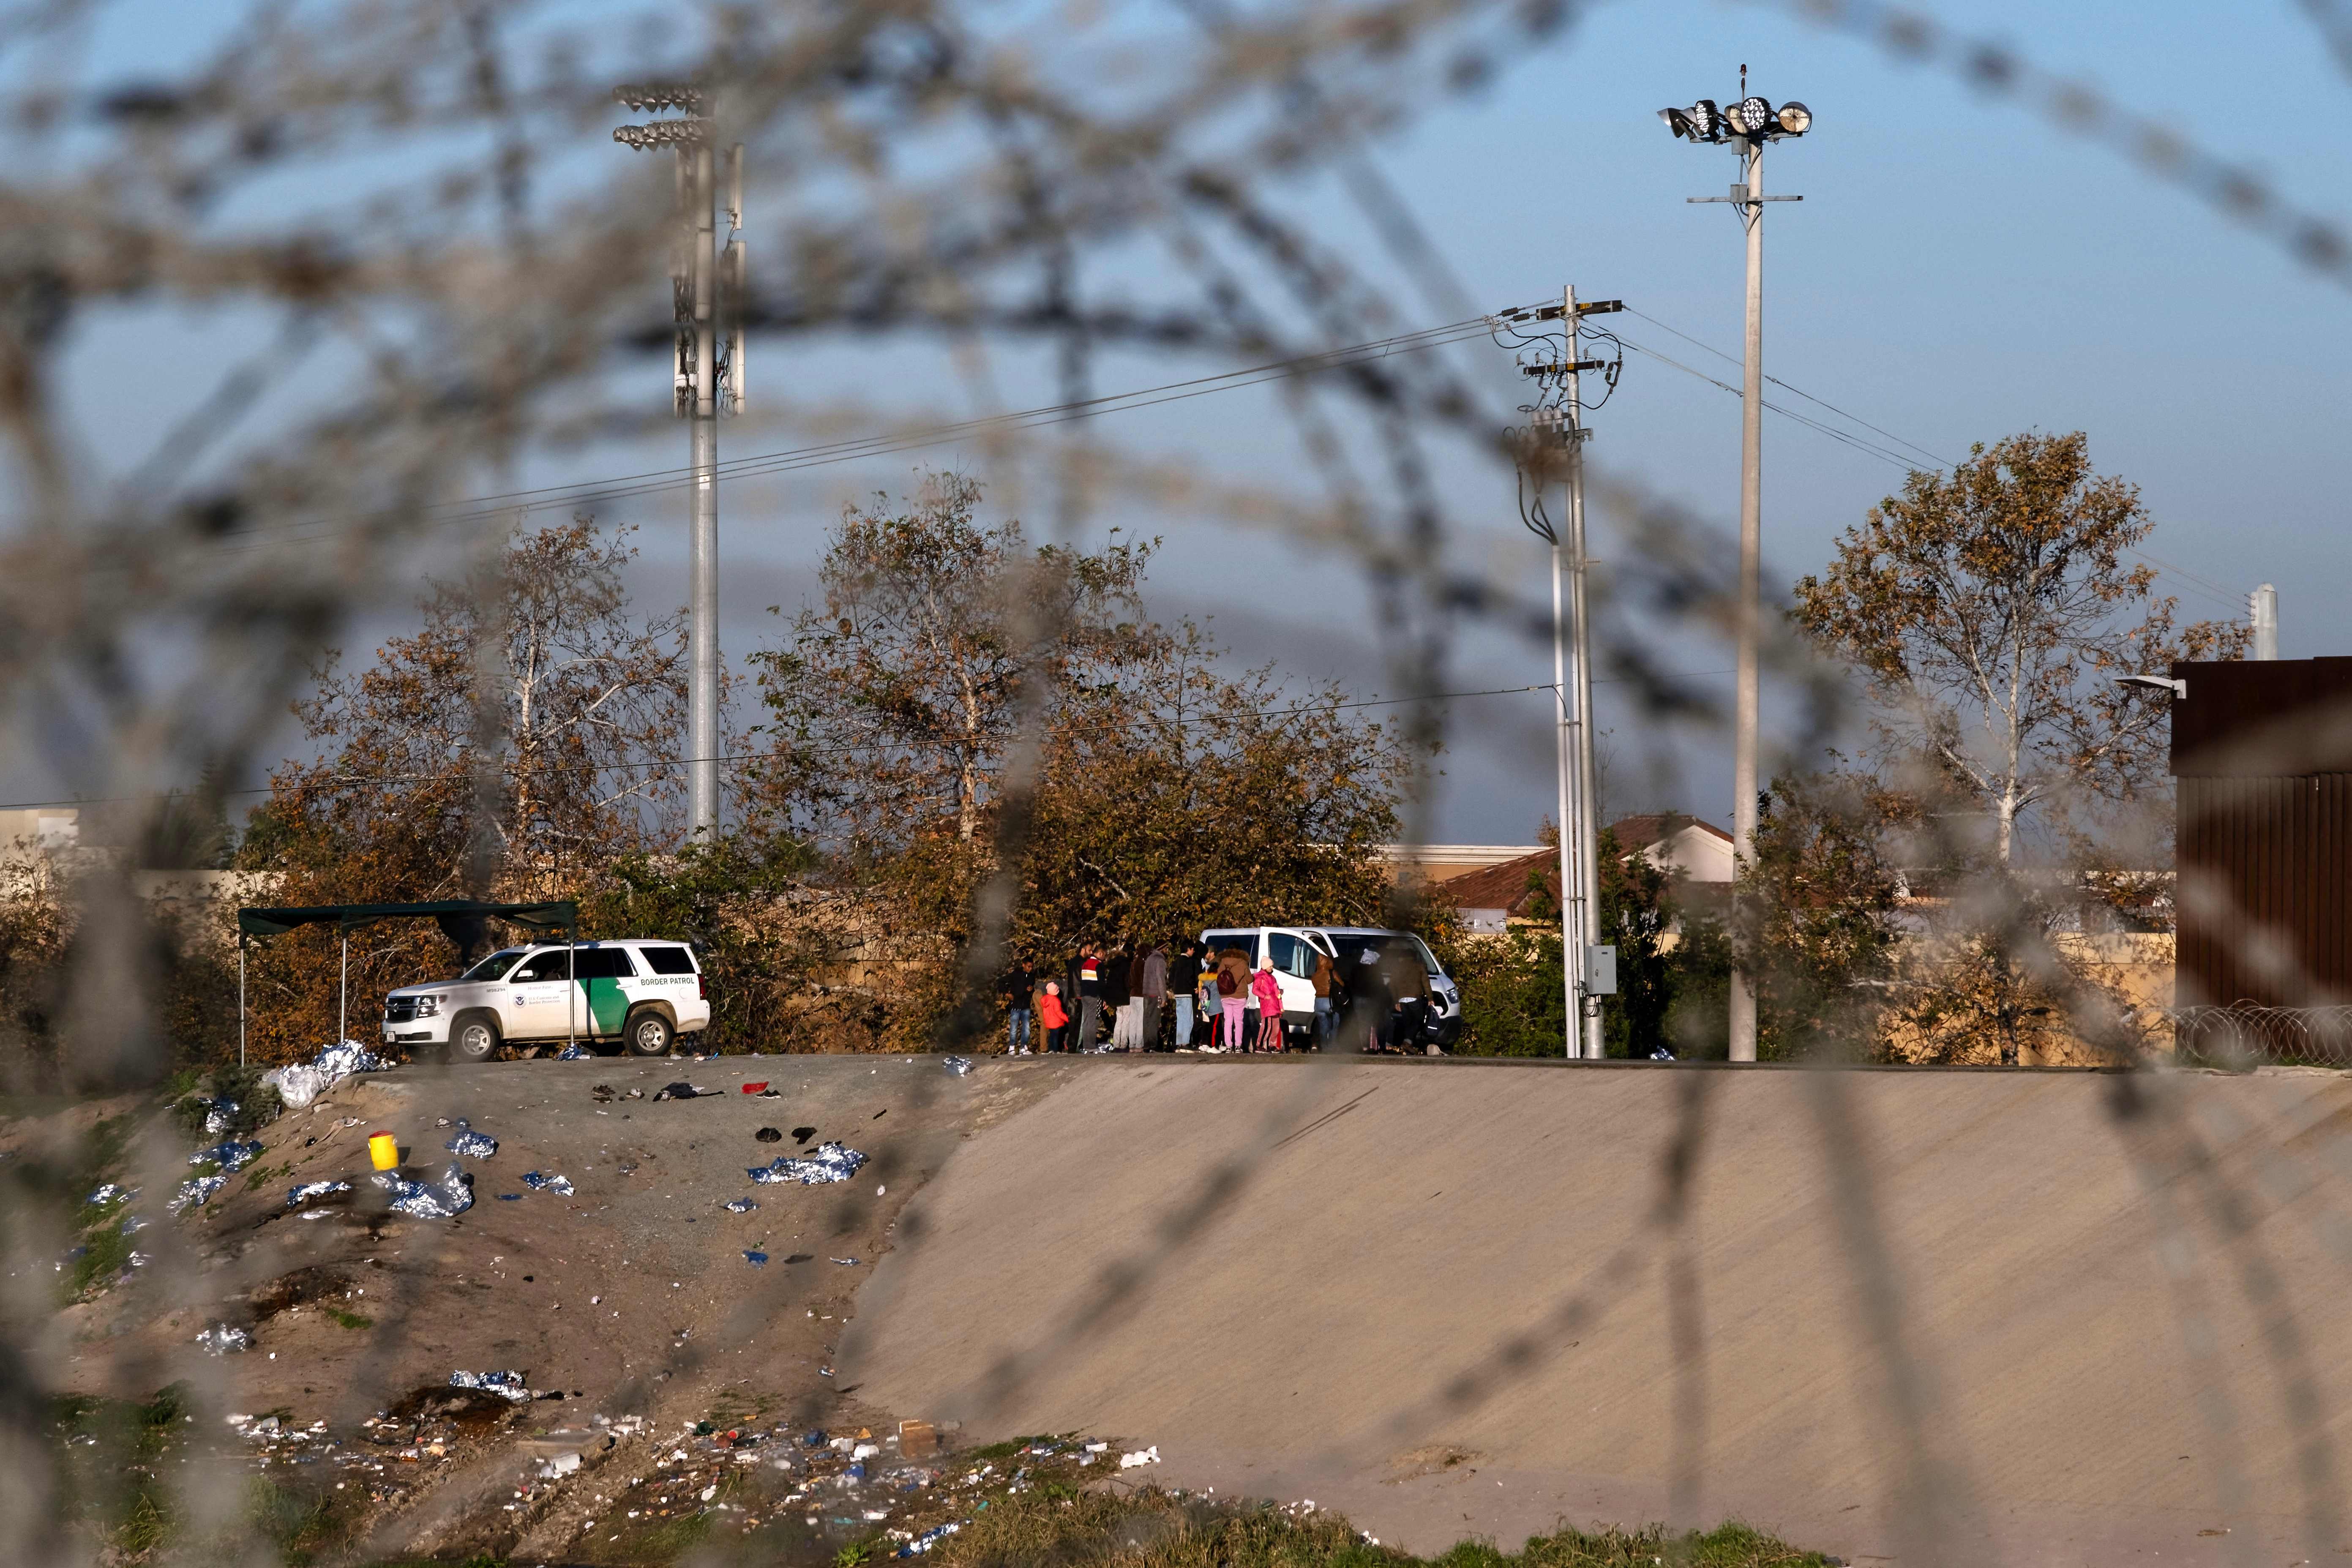 Miles de migrantes intentan llegar a EE. UU. de manera ilegal, pero con la aplicación del Título 42, las autoridades federales tienen la potestad de expulsarlo de manera exprés. (Foto Prensa Libre: AFP)